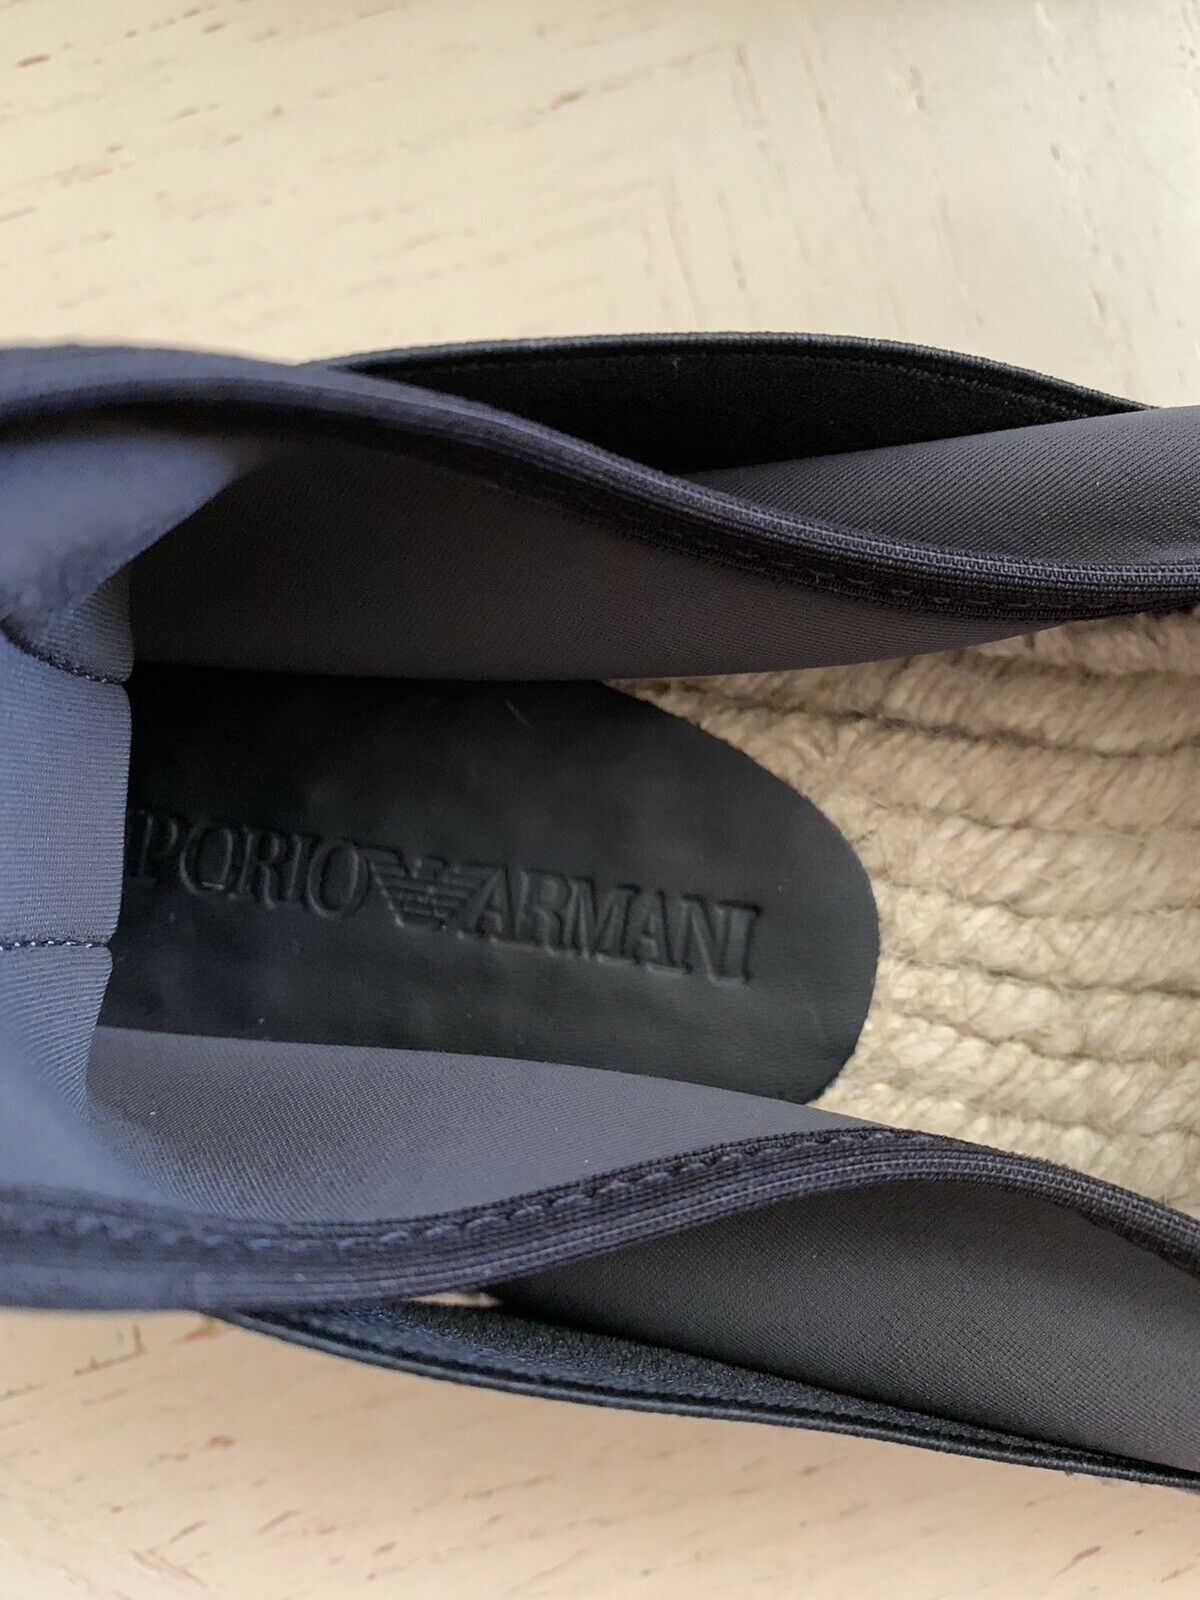 Neu $325 Emporio Armani Herren Espadrille-Schuhe Grau 11 US/10 UK X4S020